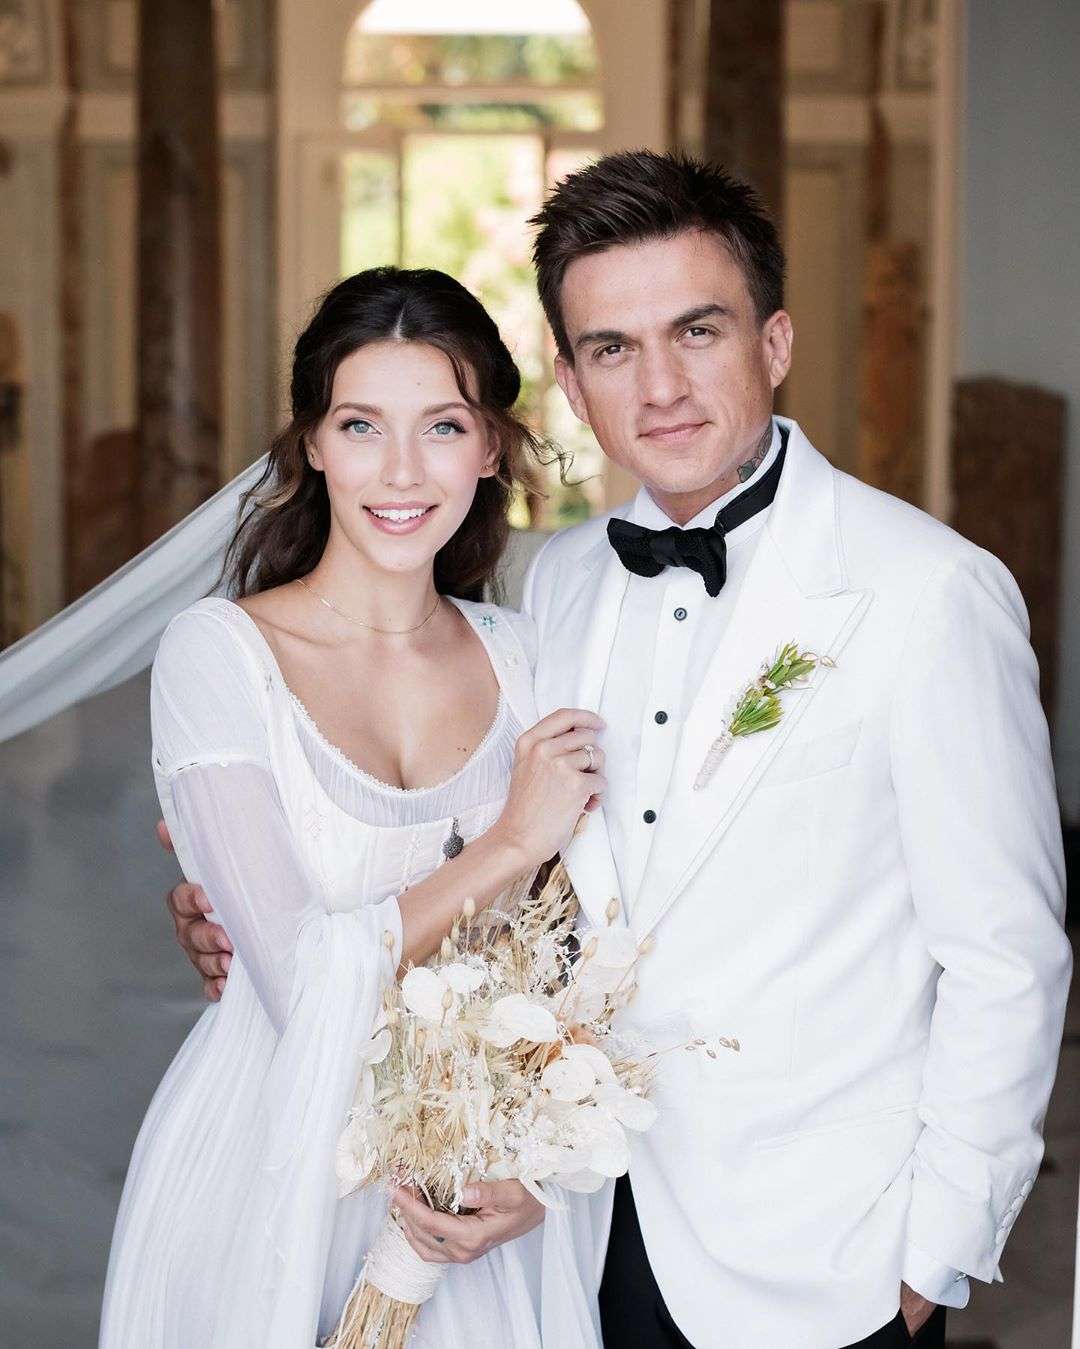 Регина Тодоренко умилила сеть официальными фото своей звездной свадьбы - фото 441304